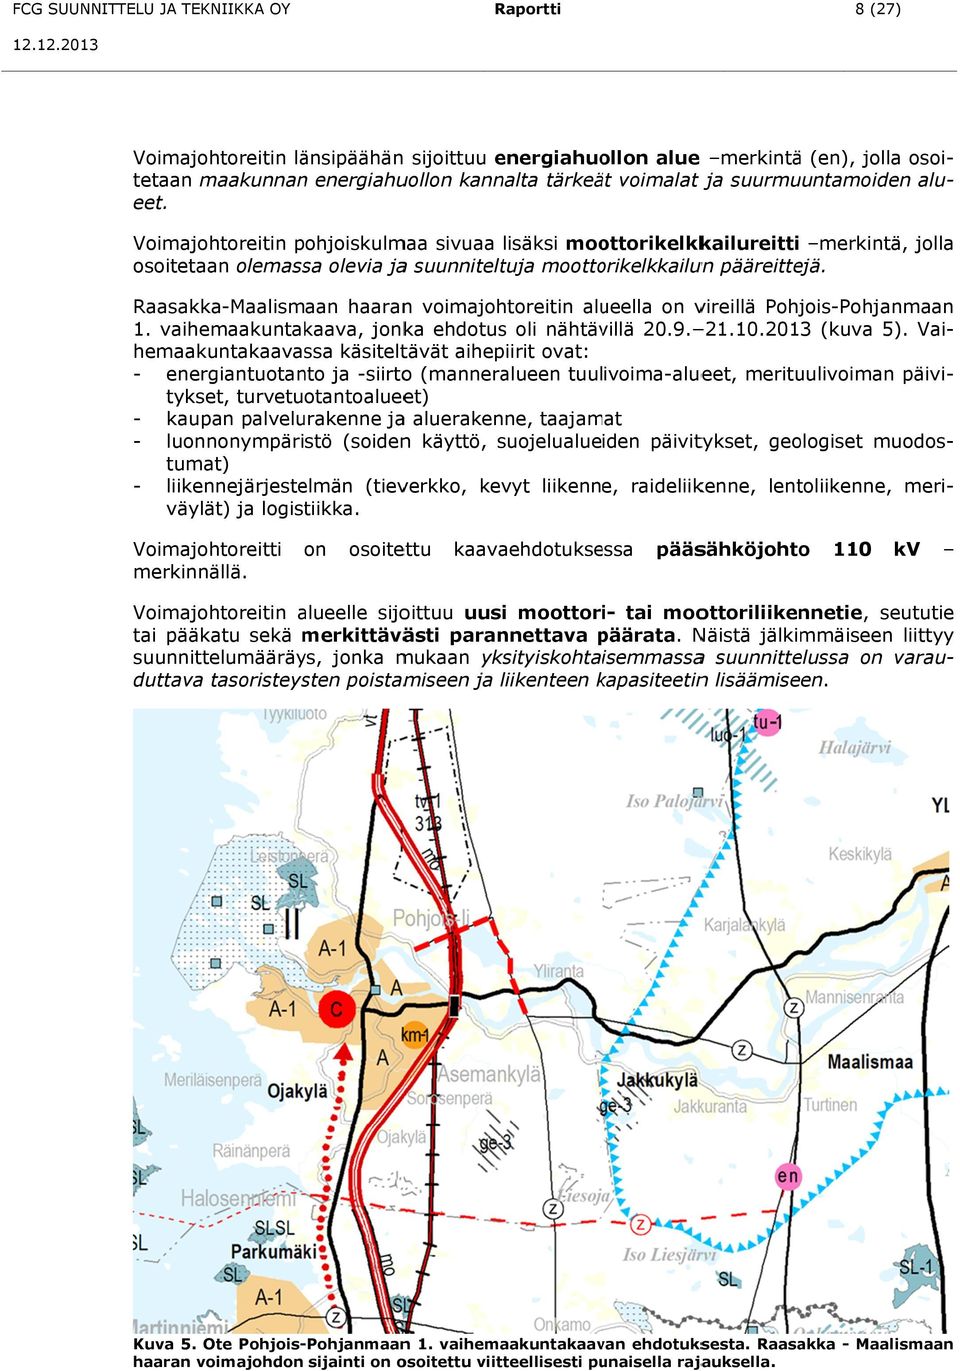 Raasakka-Maalismaan haarann voimajohtoreitin alueella on vireillä Pohjois-Pohjanmaan 1. vaihemaakuntakaava, jonka ehdotus oli nähtävillä 20.9. 21.10.2013 (kuva 5) ).